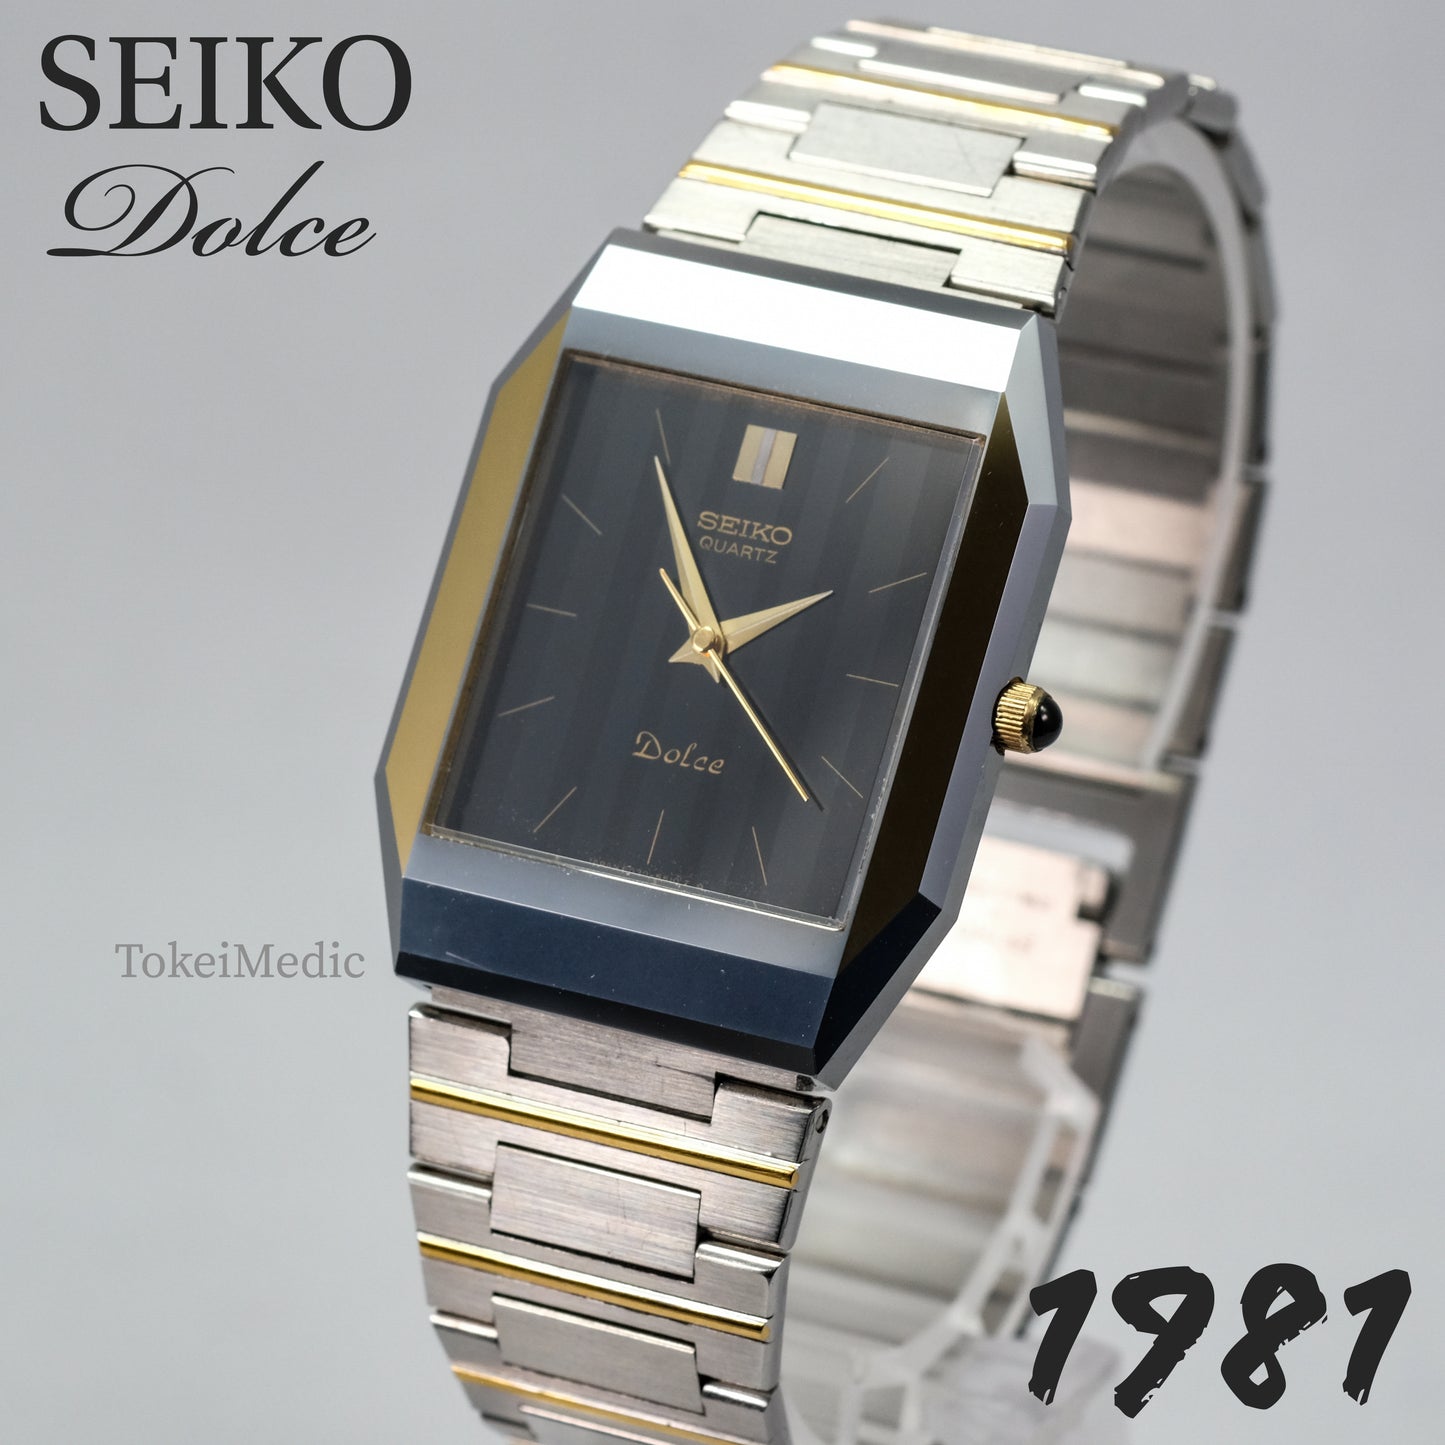 1981 Seiko Dolce 6030-5400